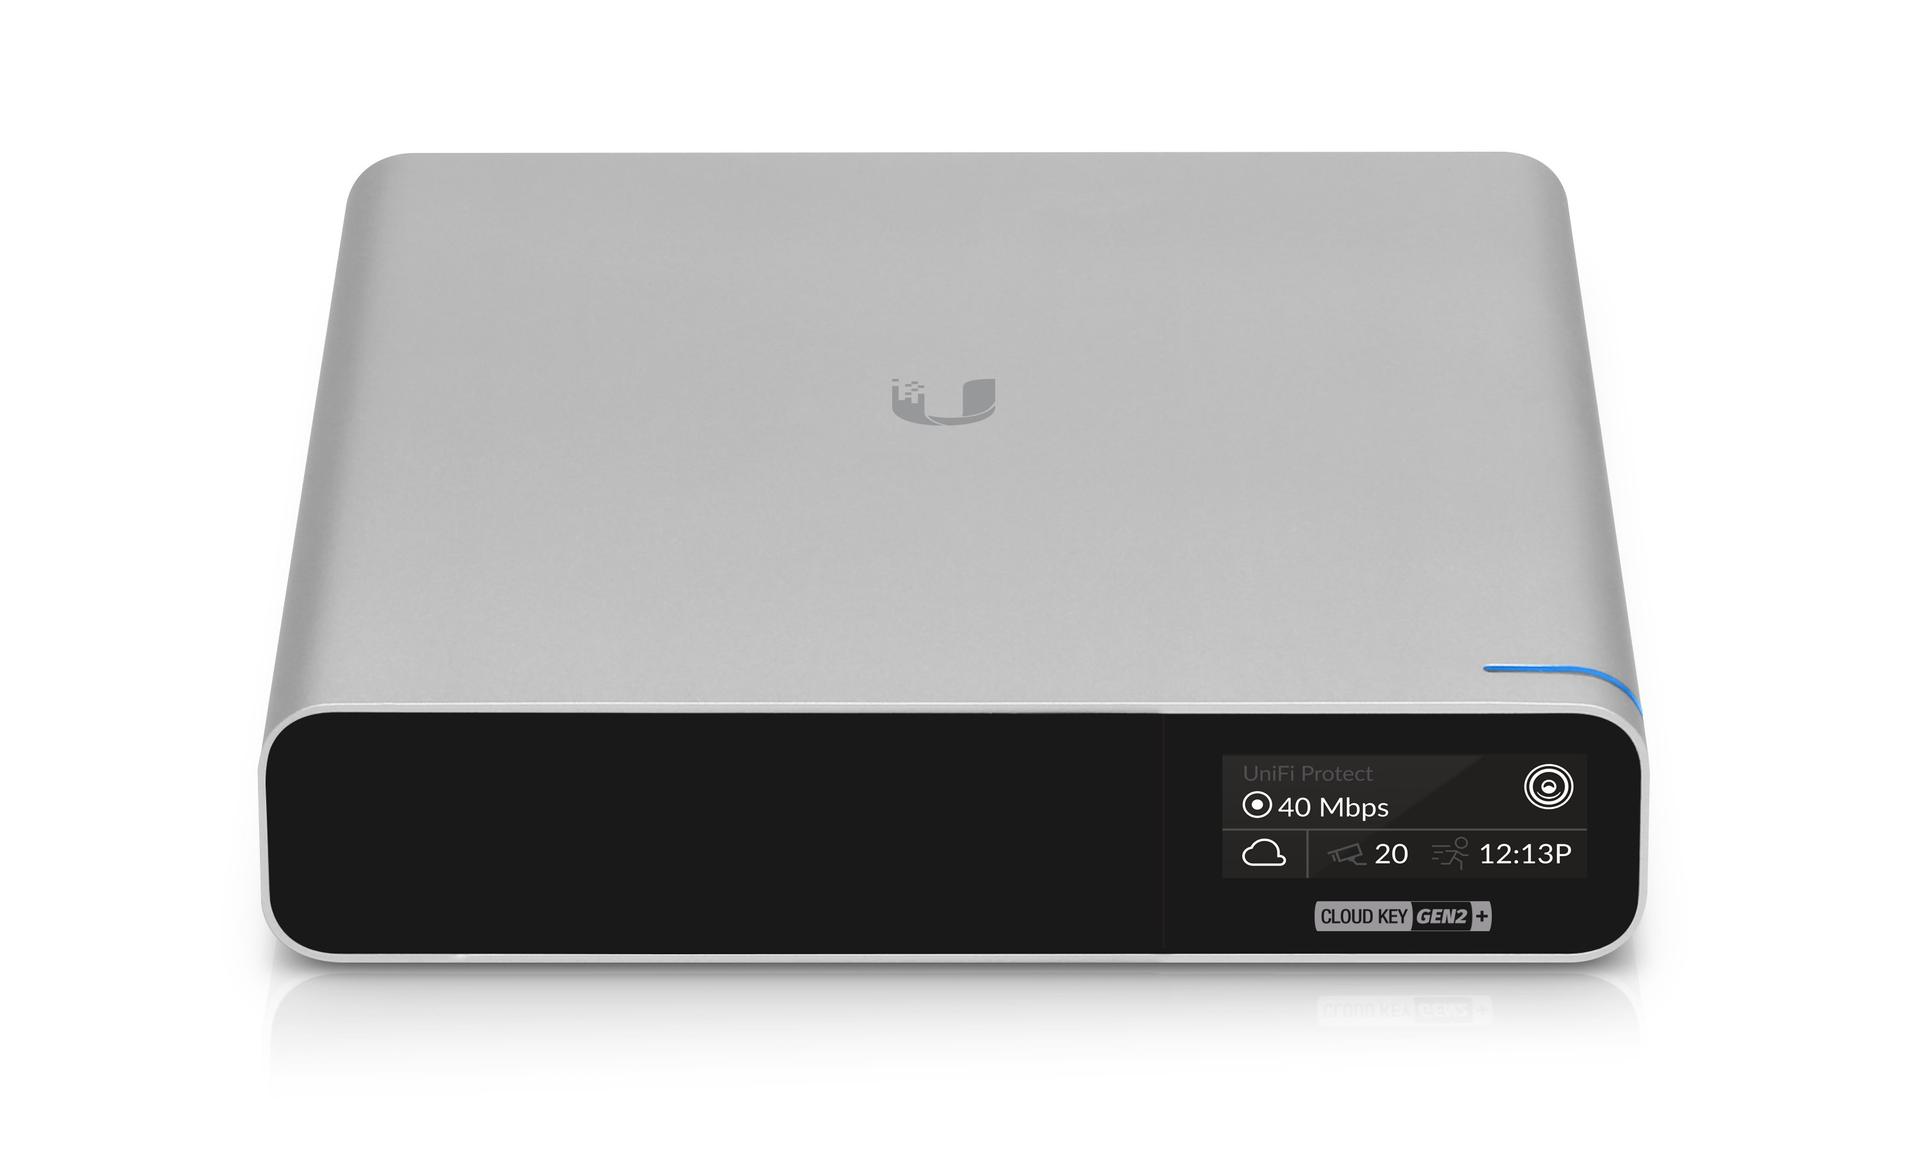 Ubiquiti UCK-G2-PLUS UniFi Gen2 Cloud Key Controller Front View Image